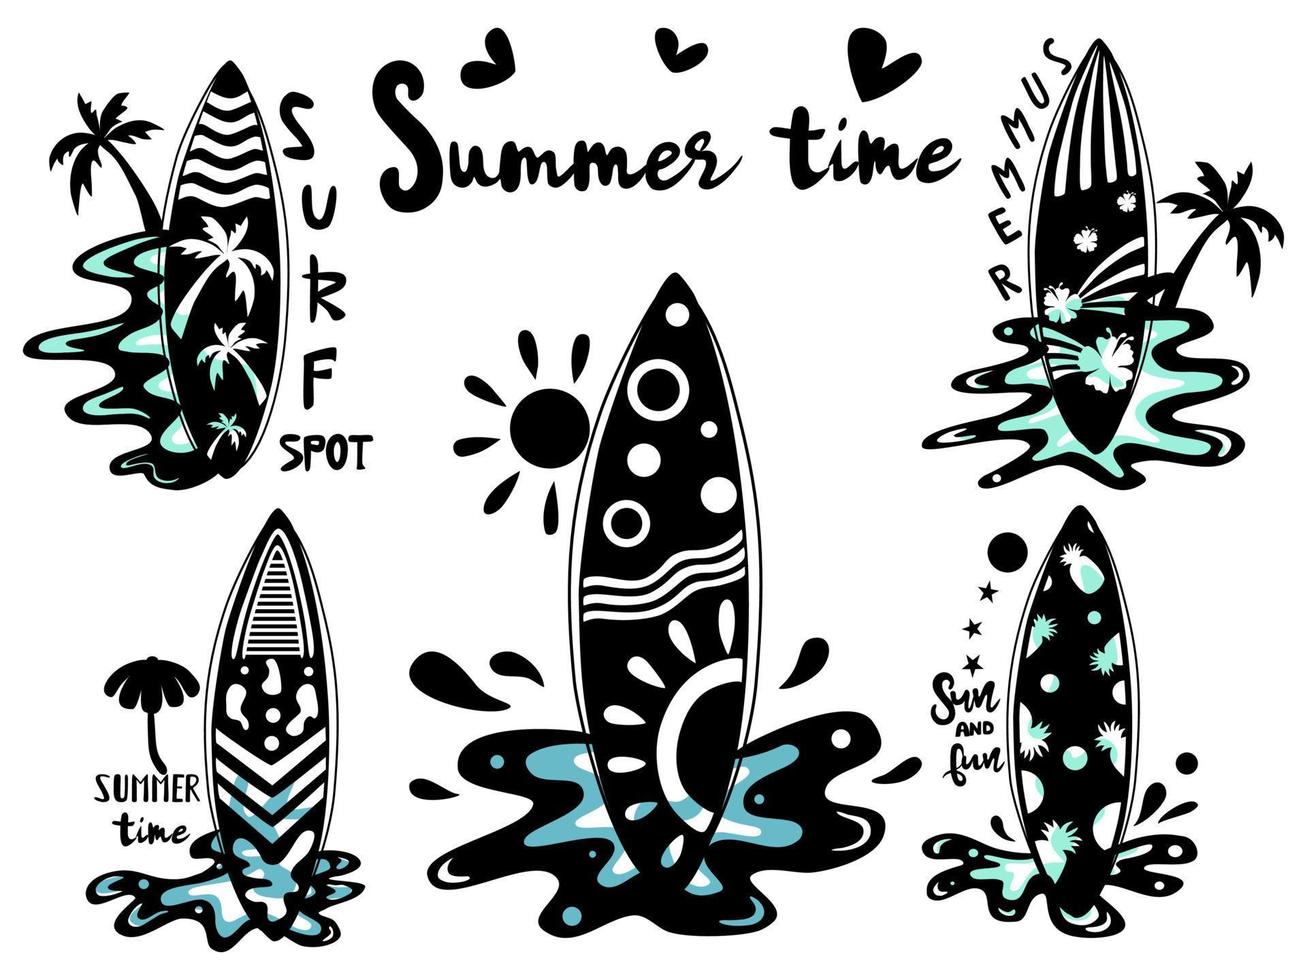 padrão de prancha de surf projetado em tons de preto doodle e estilo vintage vetor